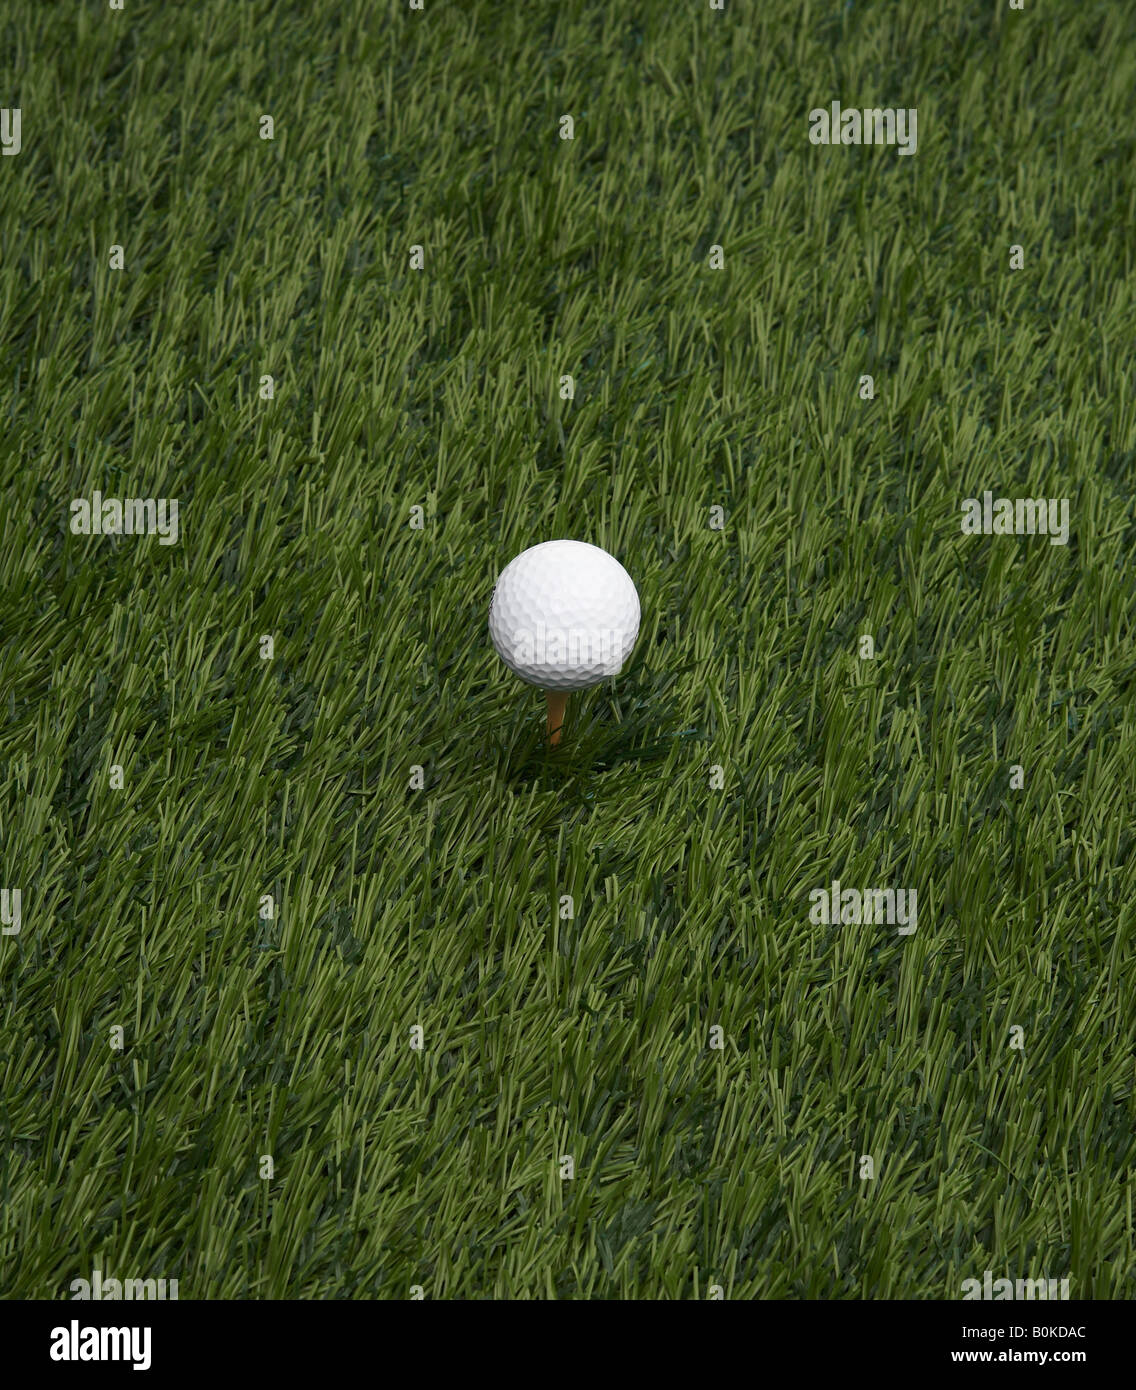 Balle de golf sur l'herbe Banque D'Images